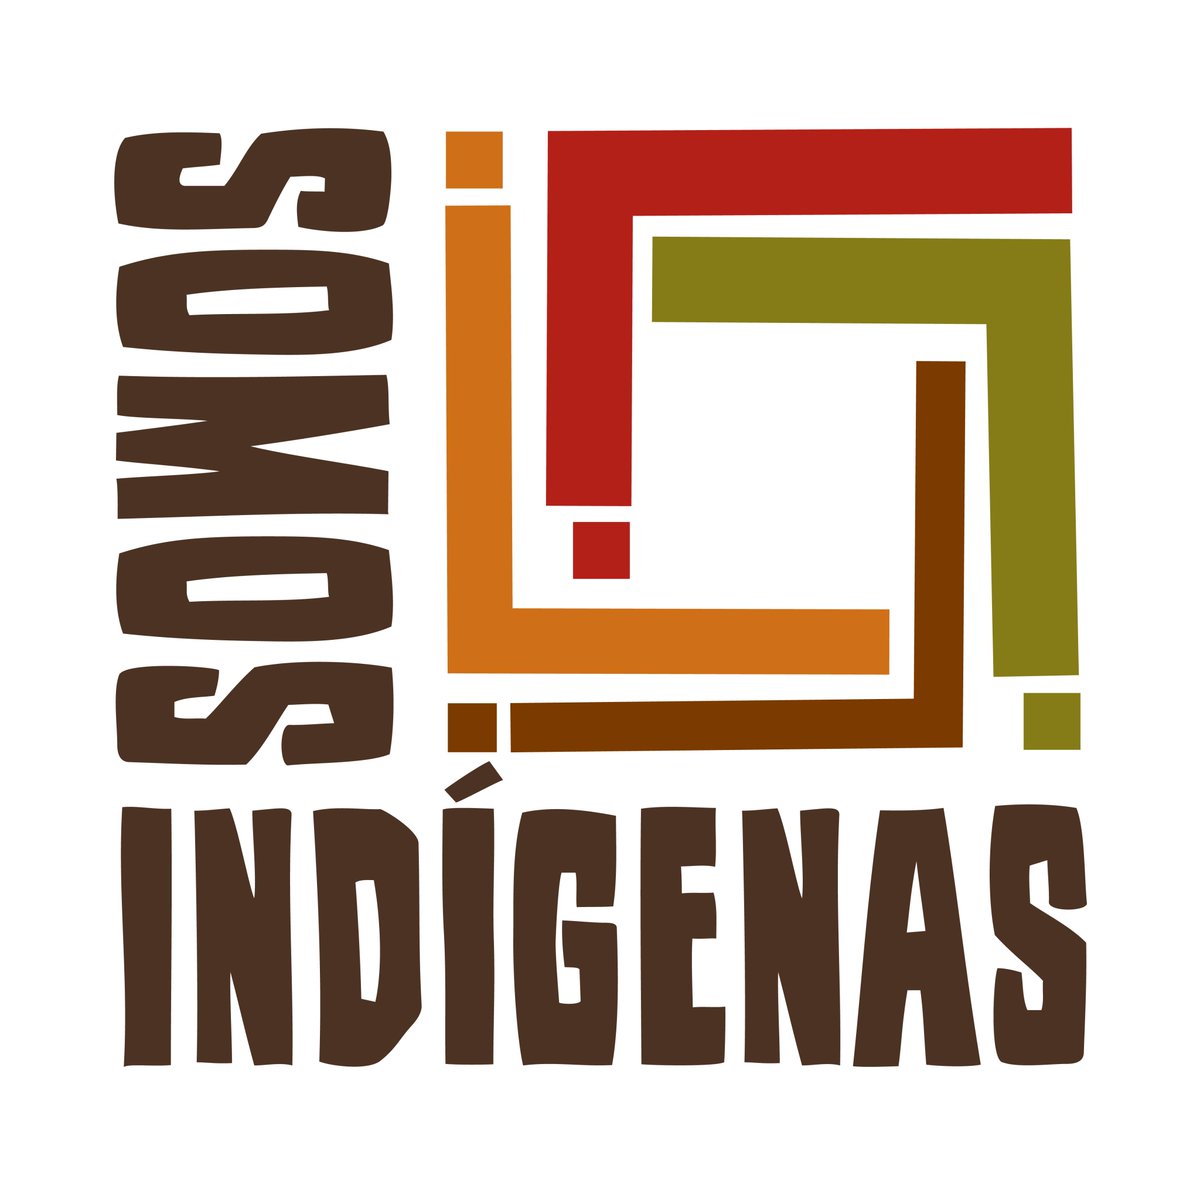 O Fórum Permanente da ONU sobre Questões Indígenas começa esta segunda-feira, na sede da ONU, em Nova Iorque. ➡️ Siga @UN4Indigenous para mais informações e use #SomosIndígenas para participar da conversa. social.desa.un.org/issues/indigen…